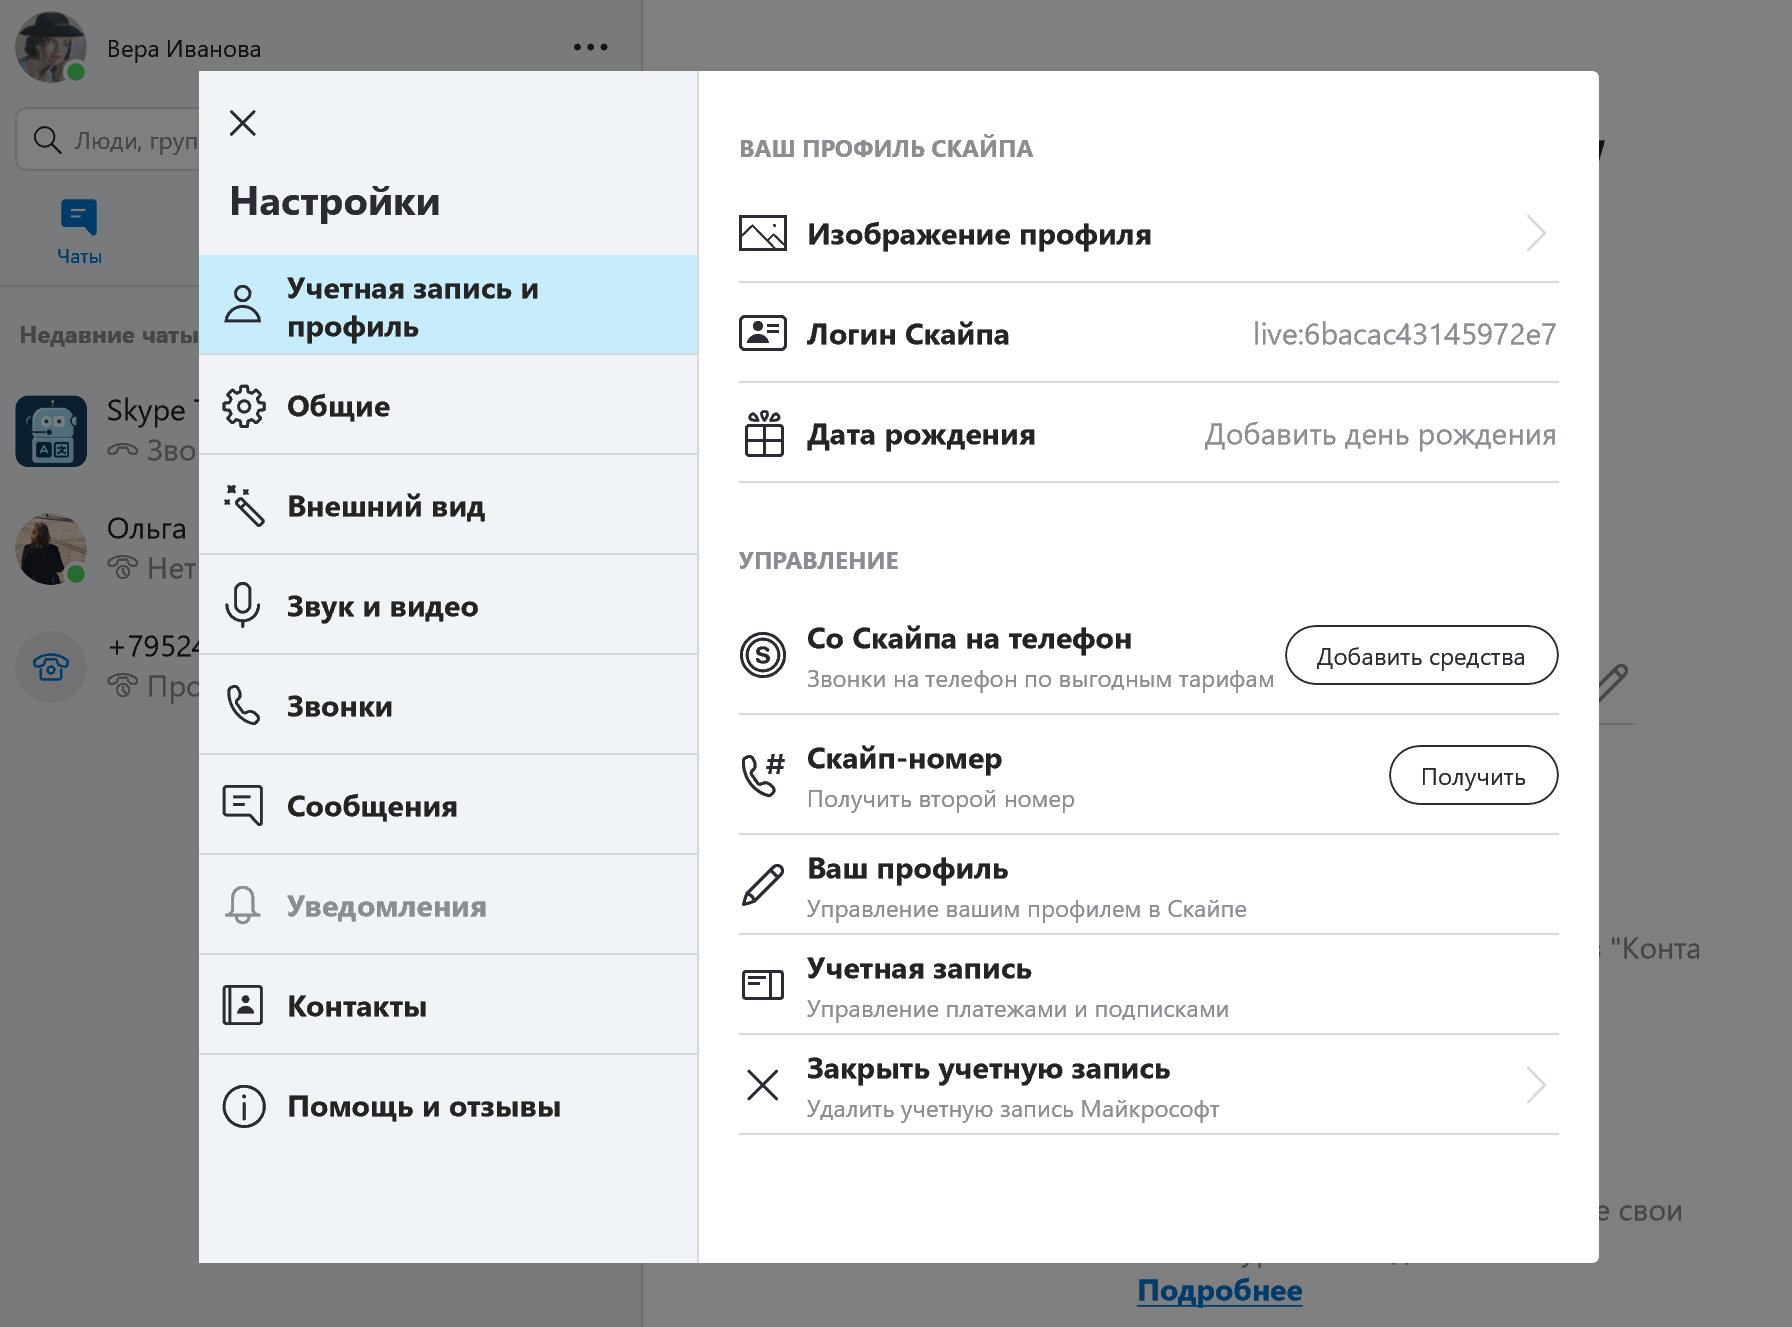 Как посмотреть контакты в Skype и сохранить список контактов | hb-crm.ru